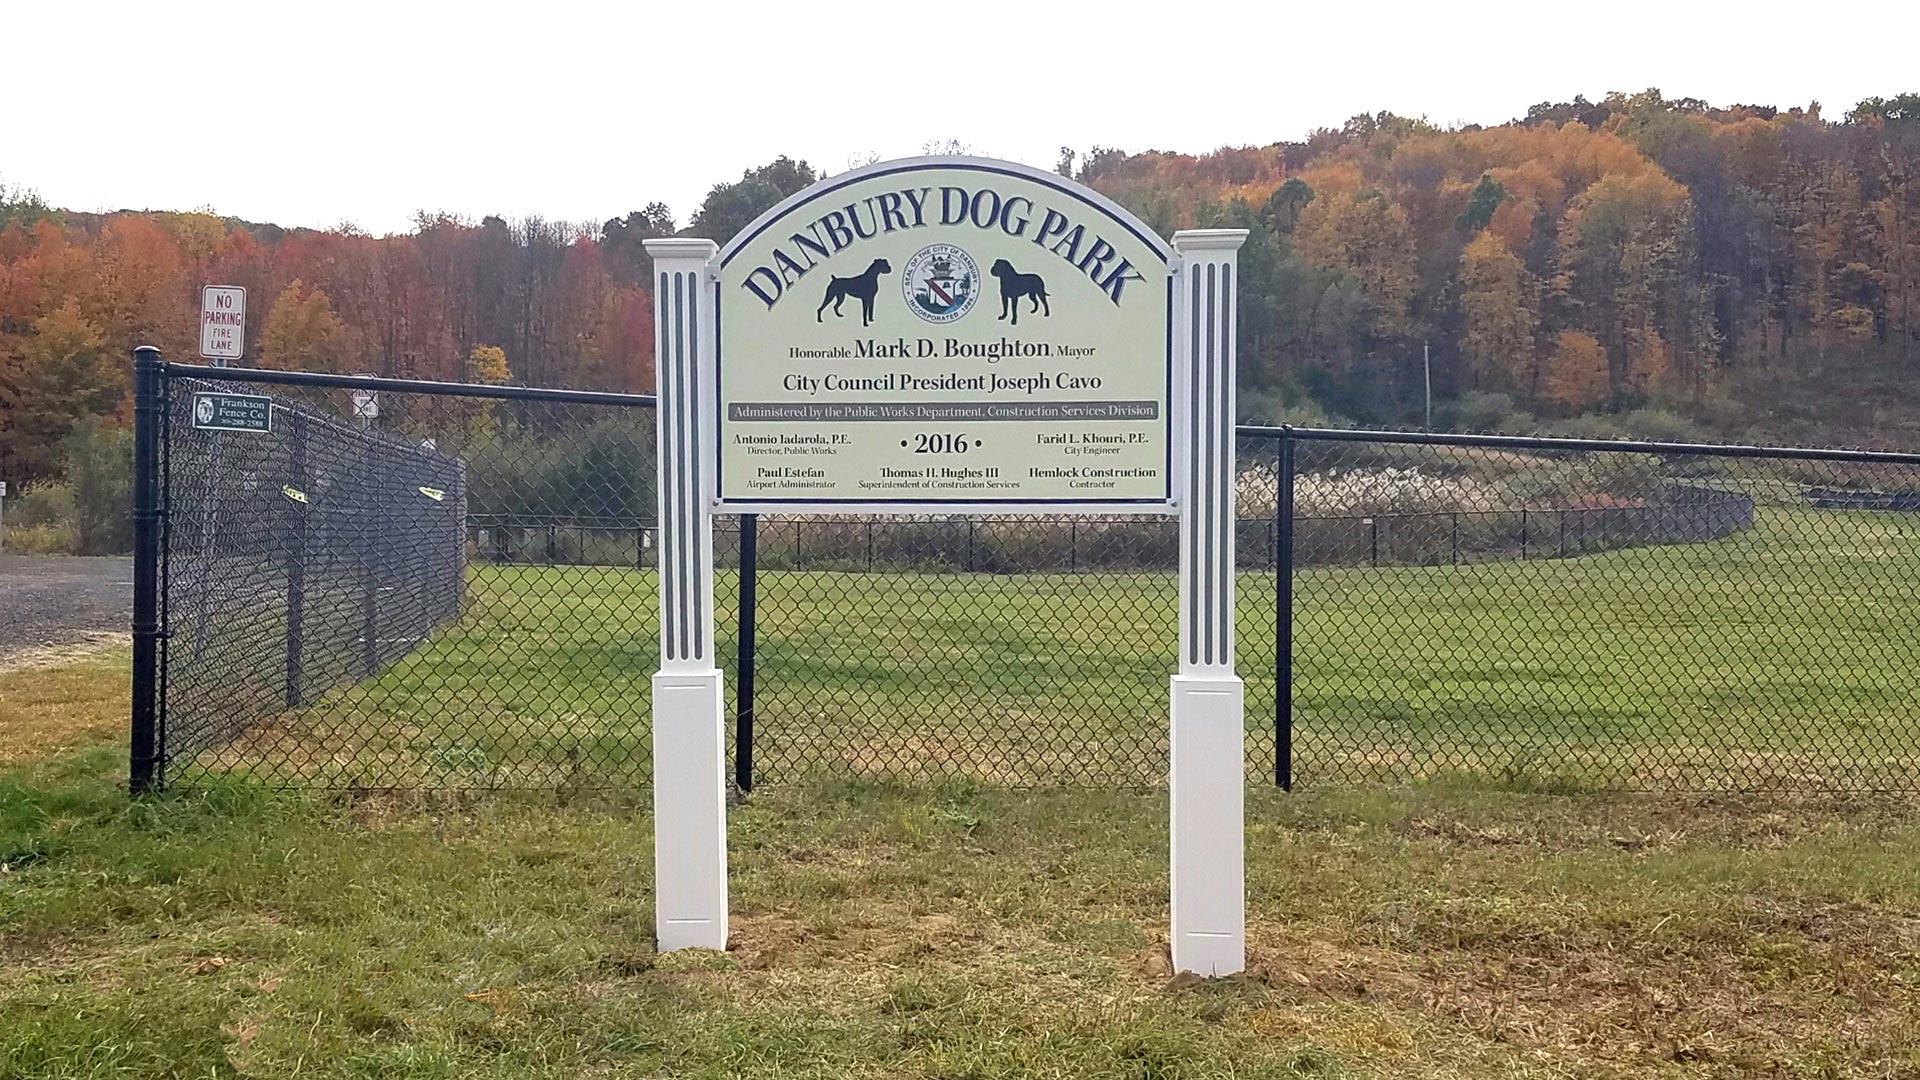 Connecticut dog parks